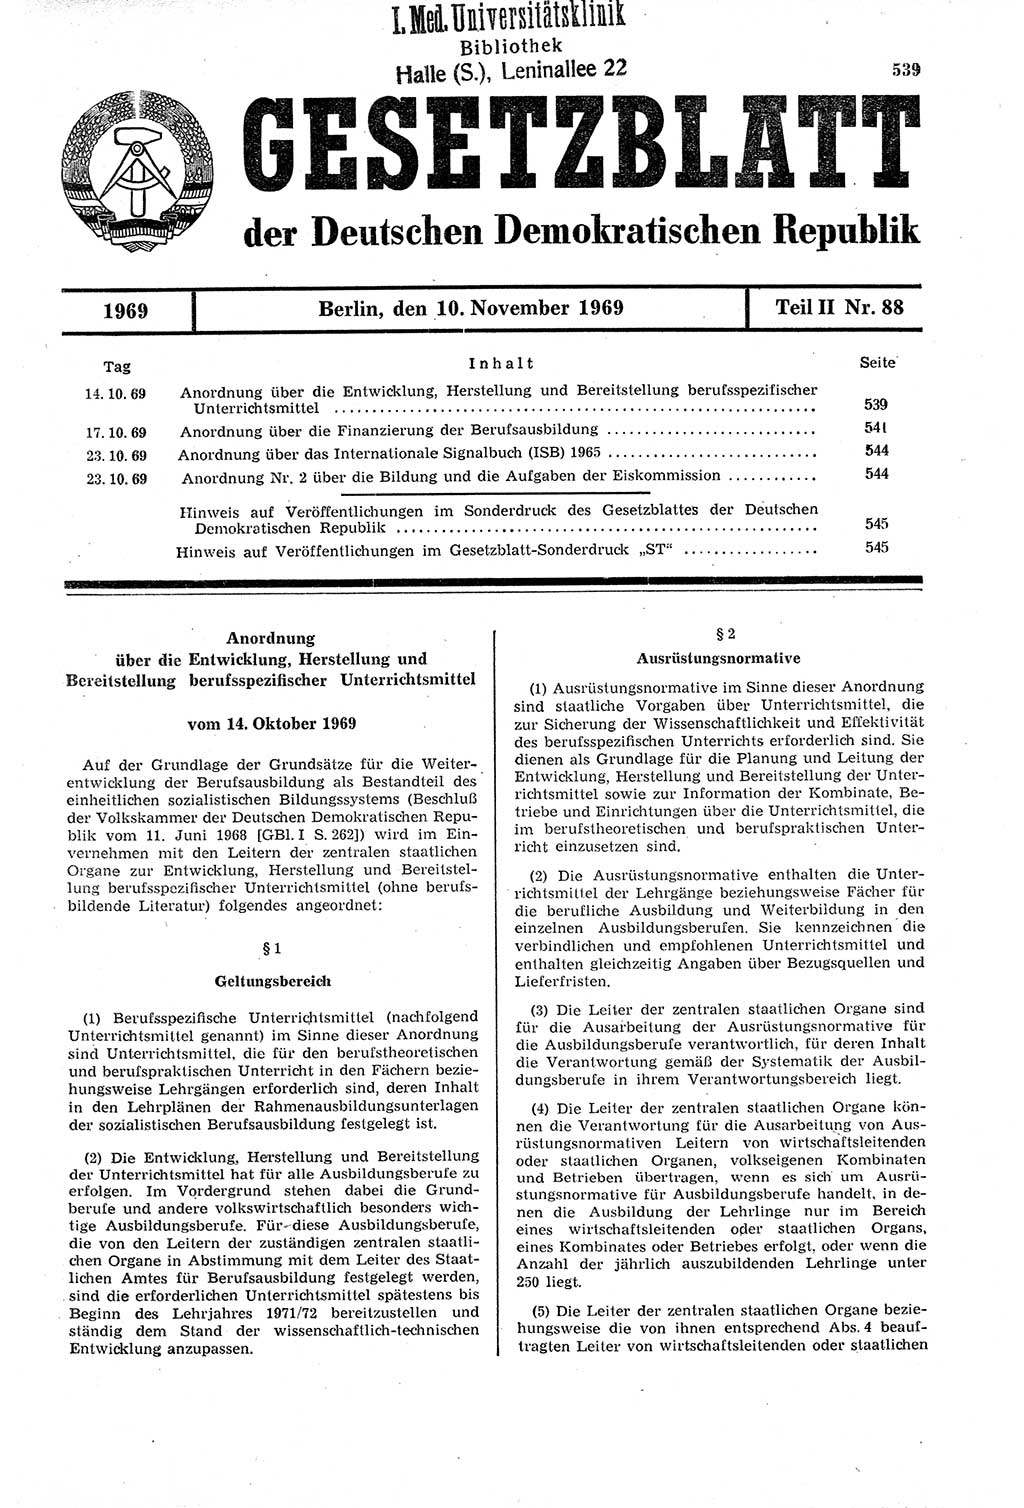 Gesetzblatt (GBl.) der Deutschen Demokratischen Republik (DDR) Teil ⅠⅠ 1969, Seite 539 (GBl. DDR ⅠⅠ 1969, S. 539)